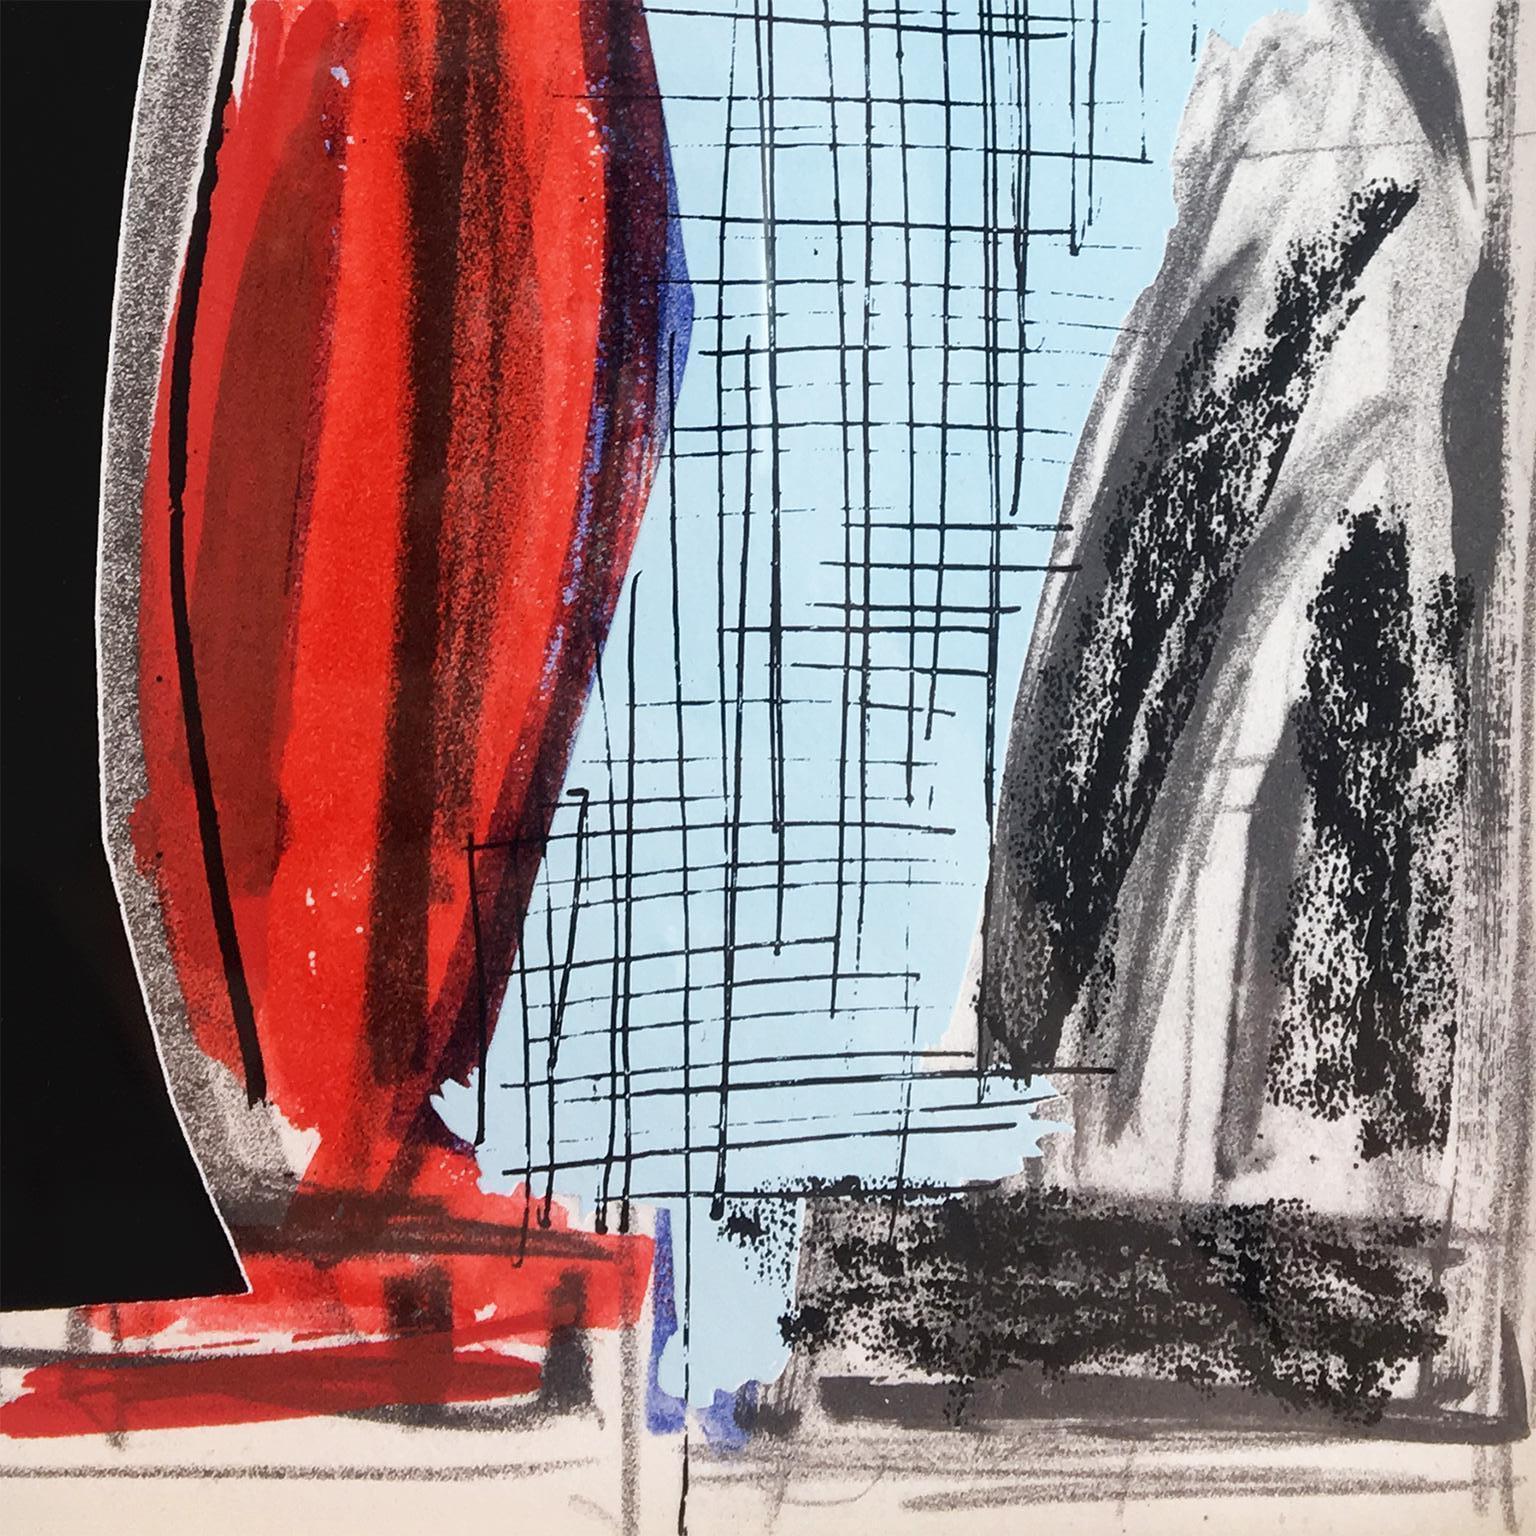  Pop-Art-Szene mit abstrahierten griechischen Säulen und grünen Blättern. Zeichnungen in Schwarz-Weiß, Blassblau, Rot und Grau bilden diese farbenfrohe Grafik. Schichten aus Plexiglas verleihen diesem dreidimensionalen Werk das Gefühl einer